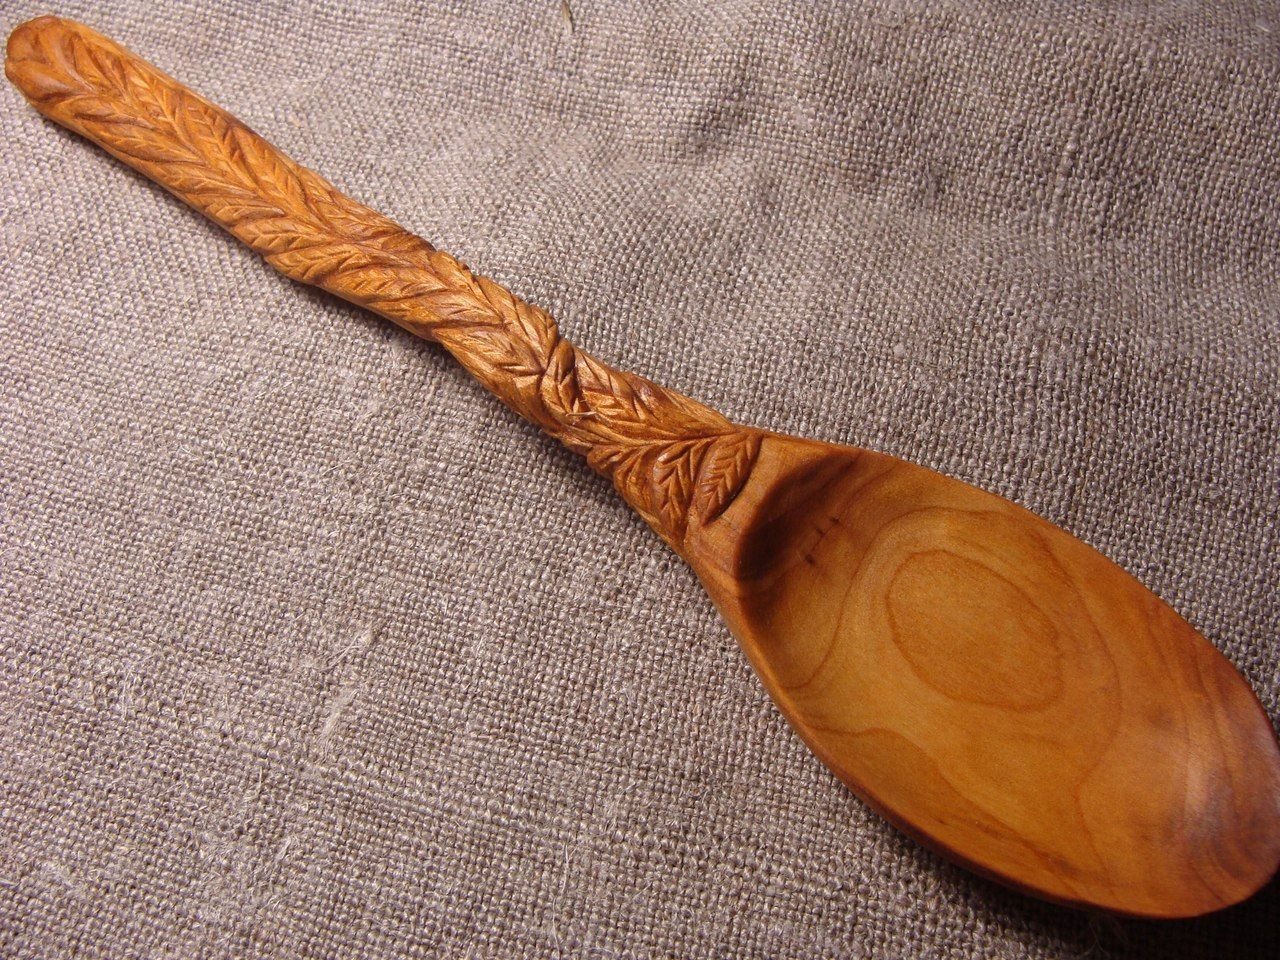 Wooden spoon. Деревянная ложка. Плоская деревянная ложка. Ложки из дерева. Старинные деревянные ложки.